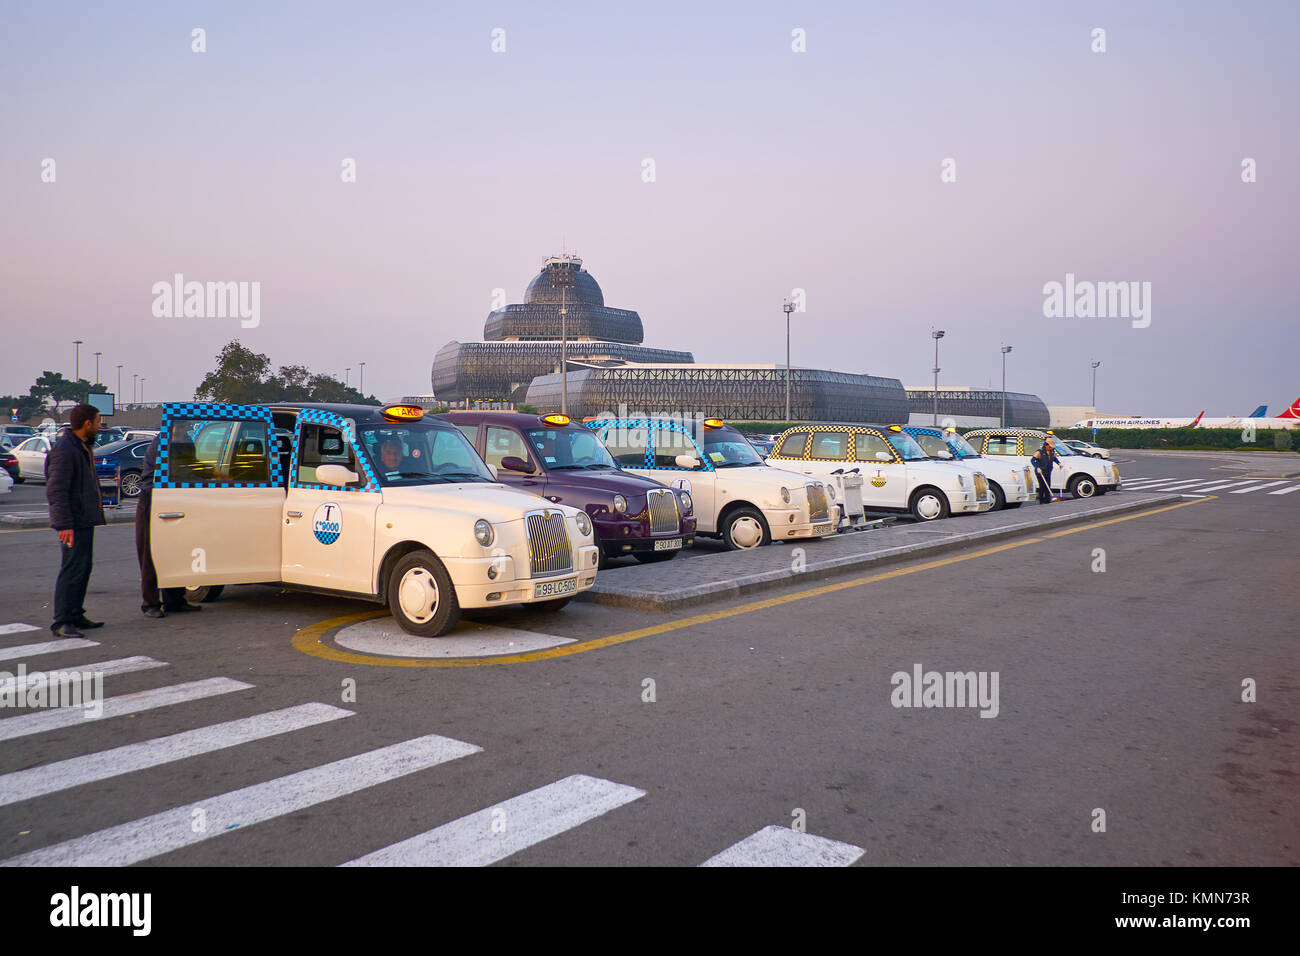 такси в египте